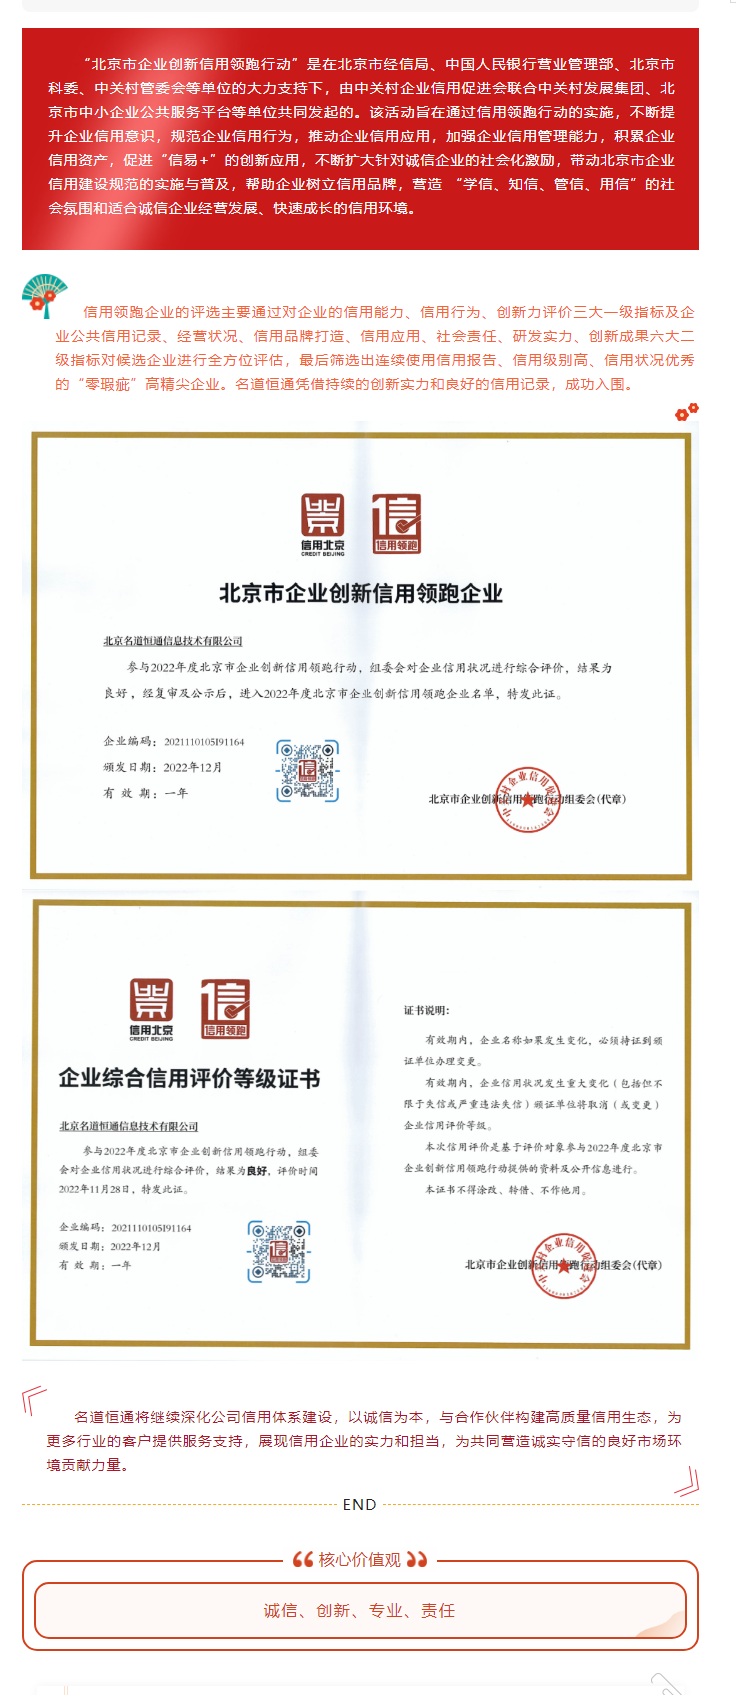 祝贺我司获得《北京市企业创新信用领跑企业证书》《企业综合信用评价等级证书》(图1)